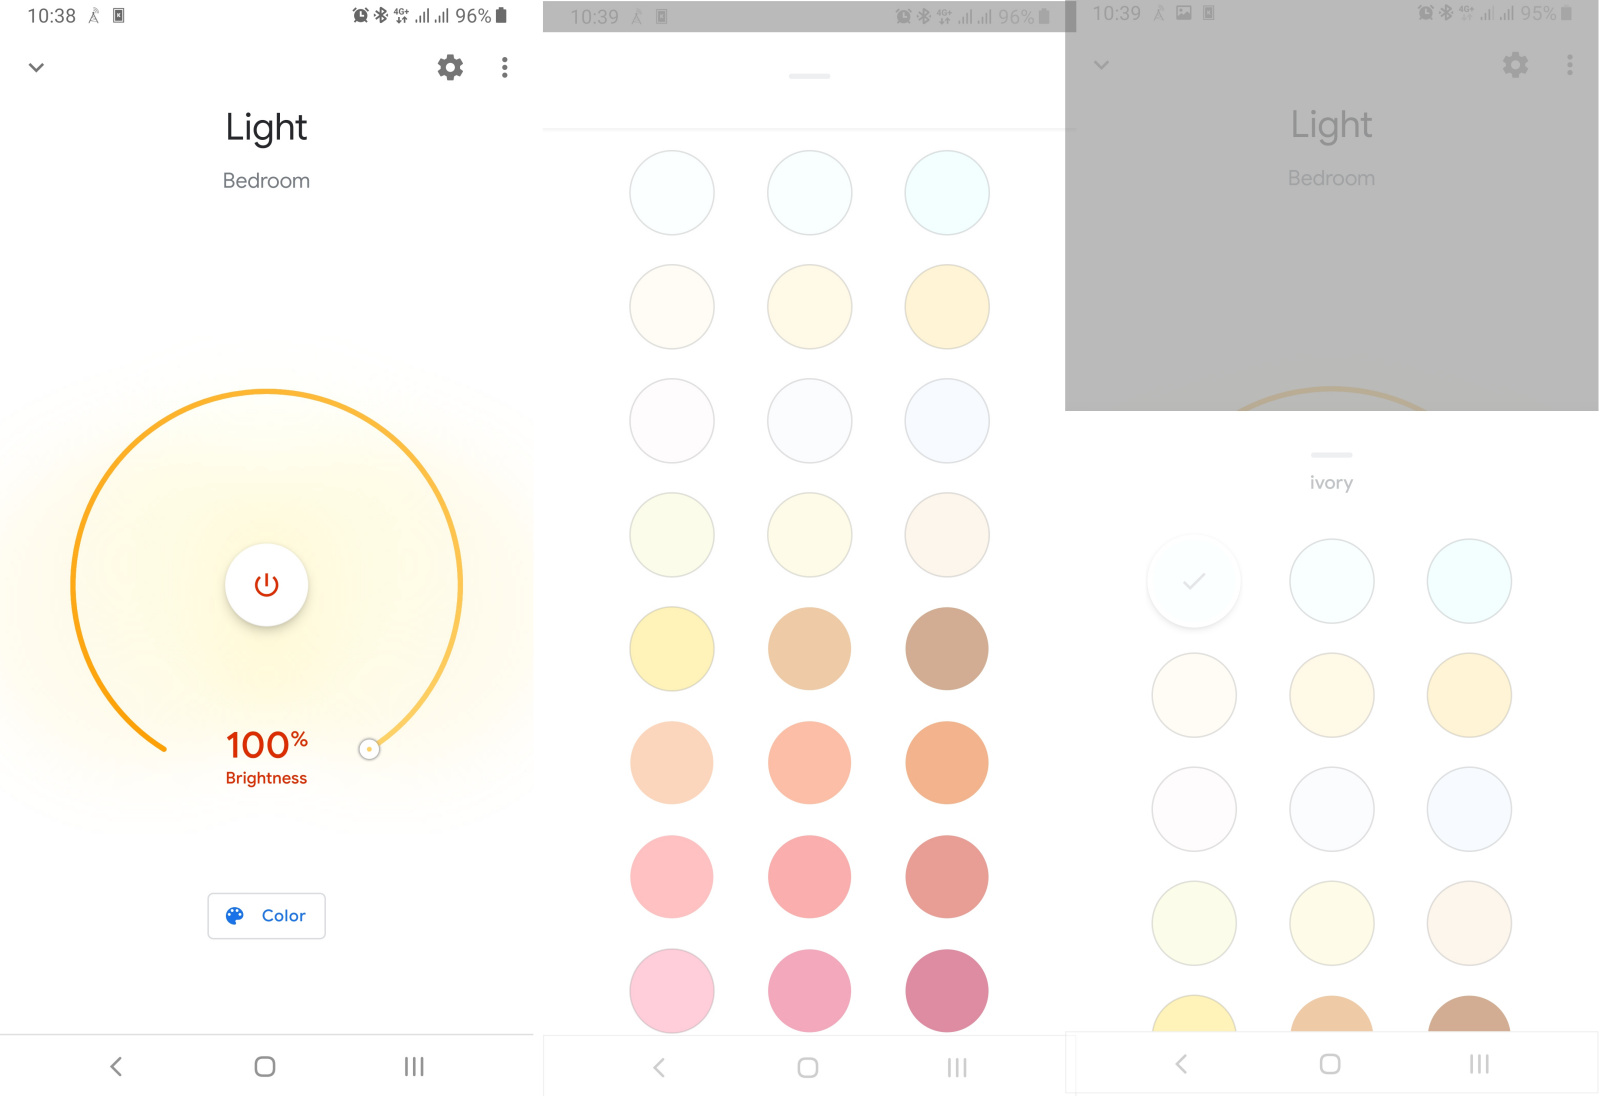 Come ottengo i colori chiari su Google Home?